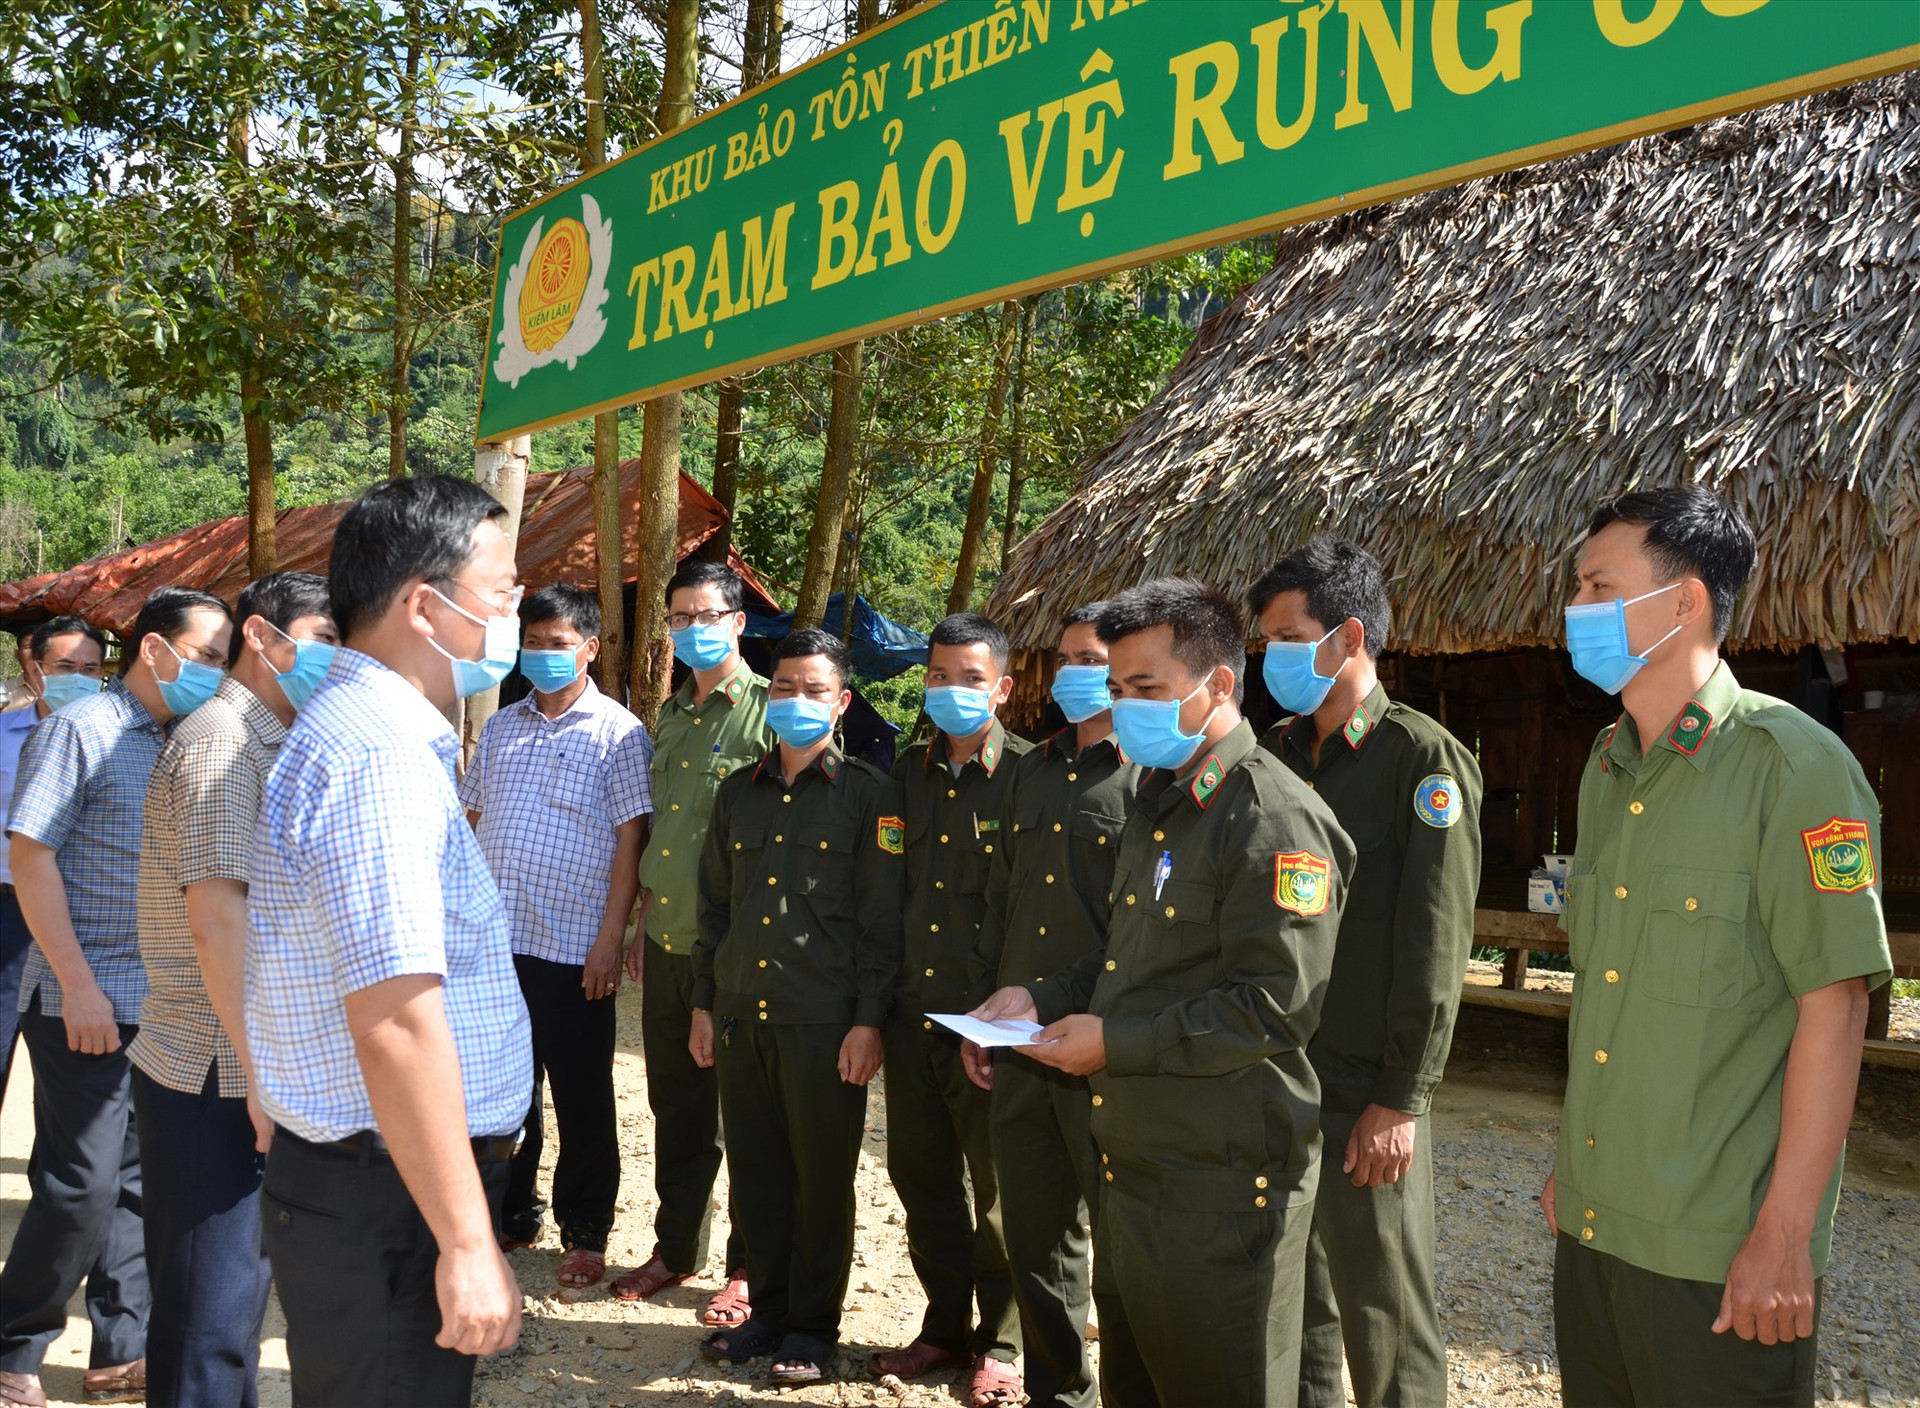 Chủ tịch UBND tỉnh Lê Trí Thanh trong chuyến thăm một trạm bảo vệ rừng nằm trong Vườn quốc gia Sông Thanh, địa phận xã Đắc Pring (Nam Giang). Ảnh: H.P